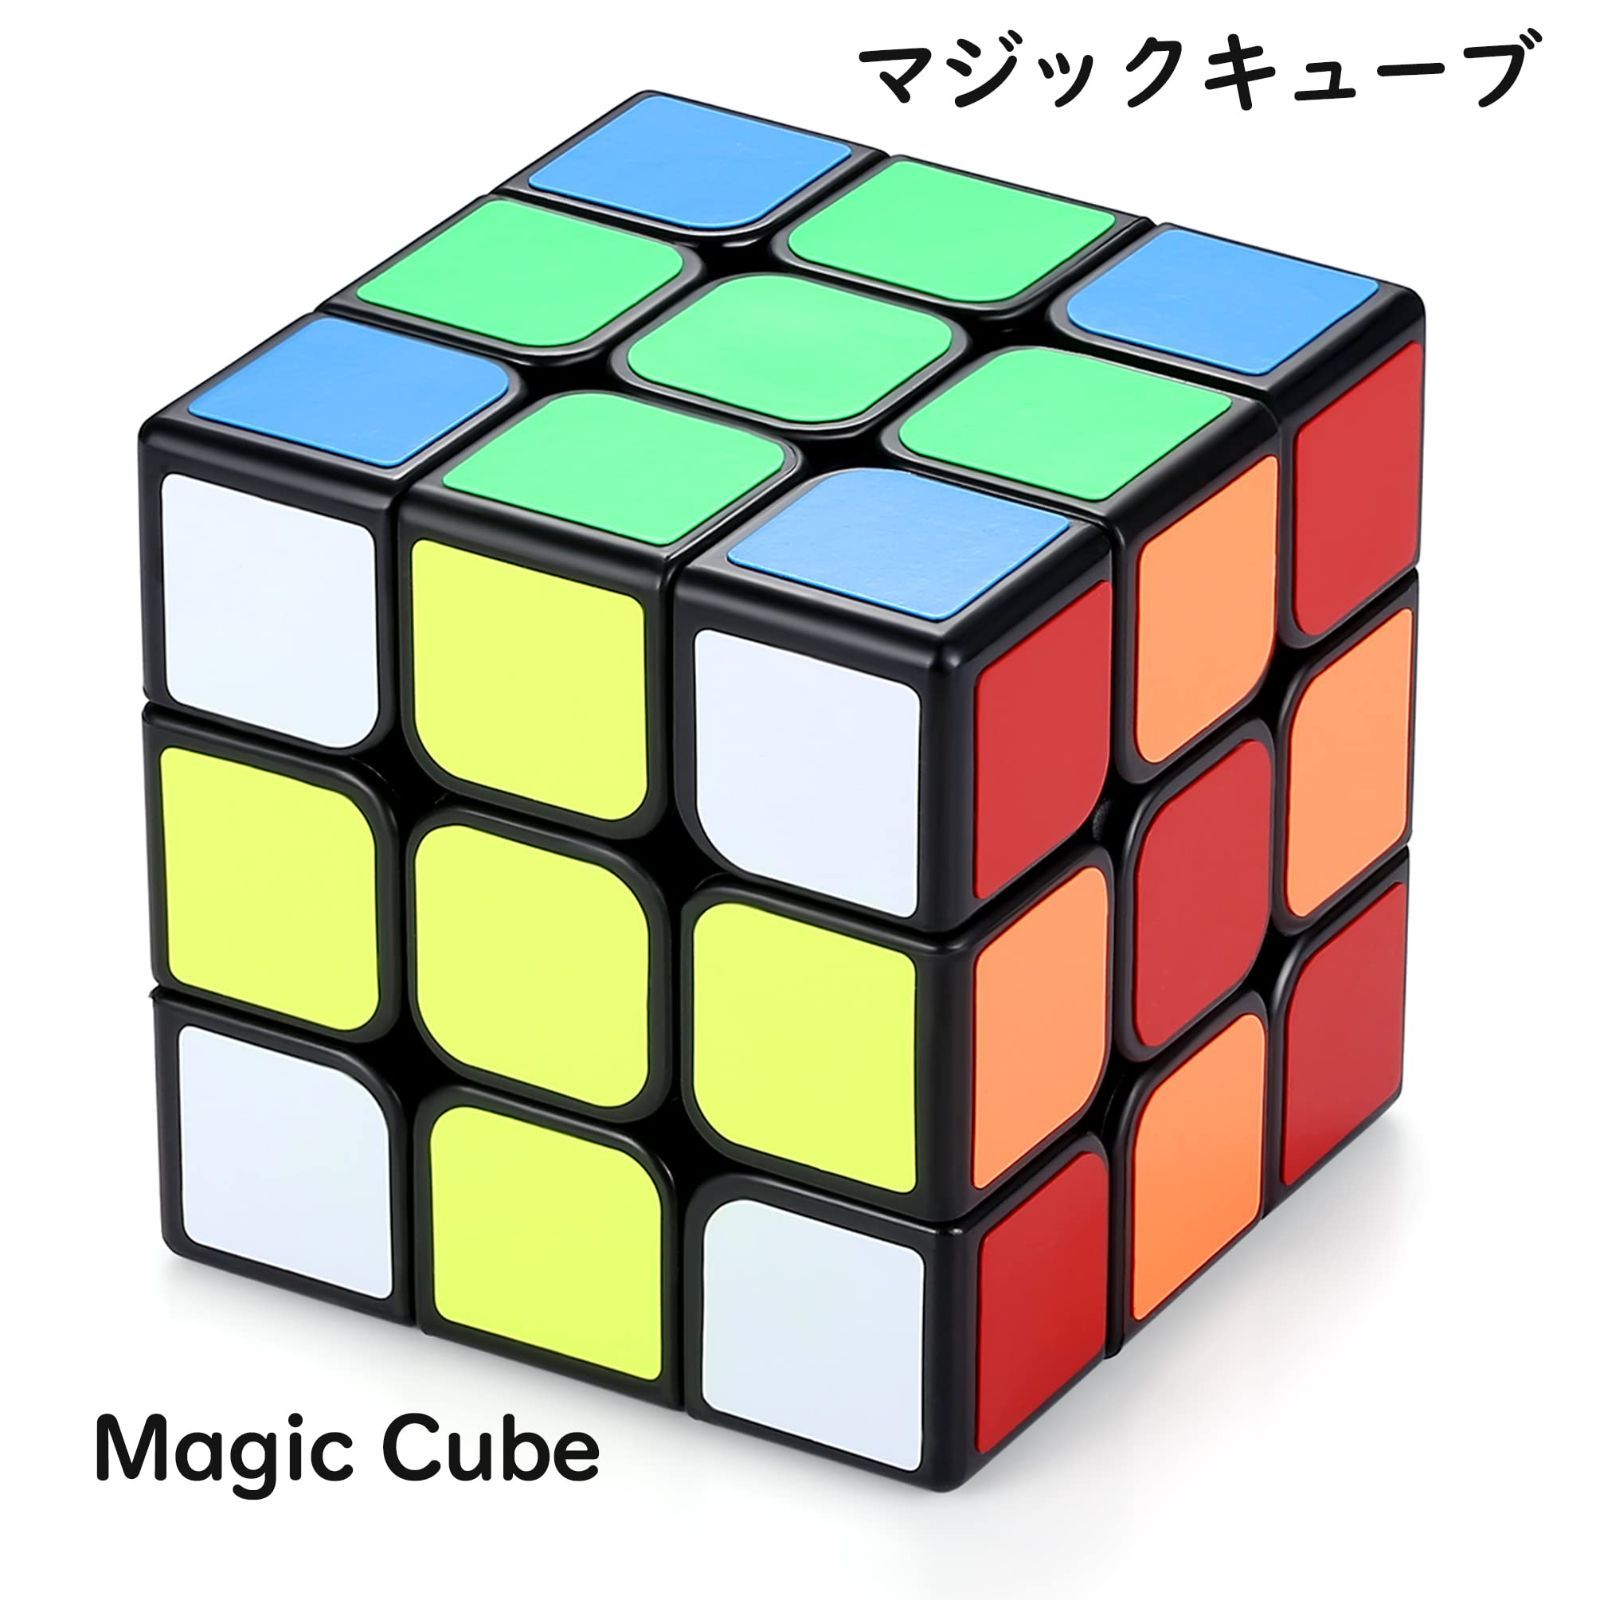 キューブ スピードキューブ 3×3×3 世界基準配色 スムーズ回転立体パズル